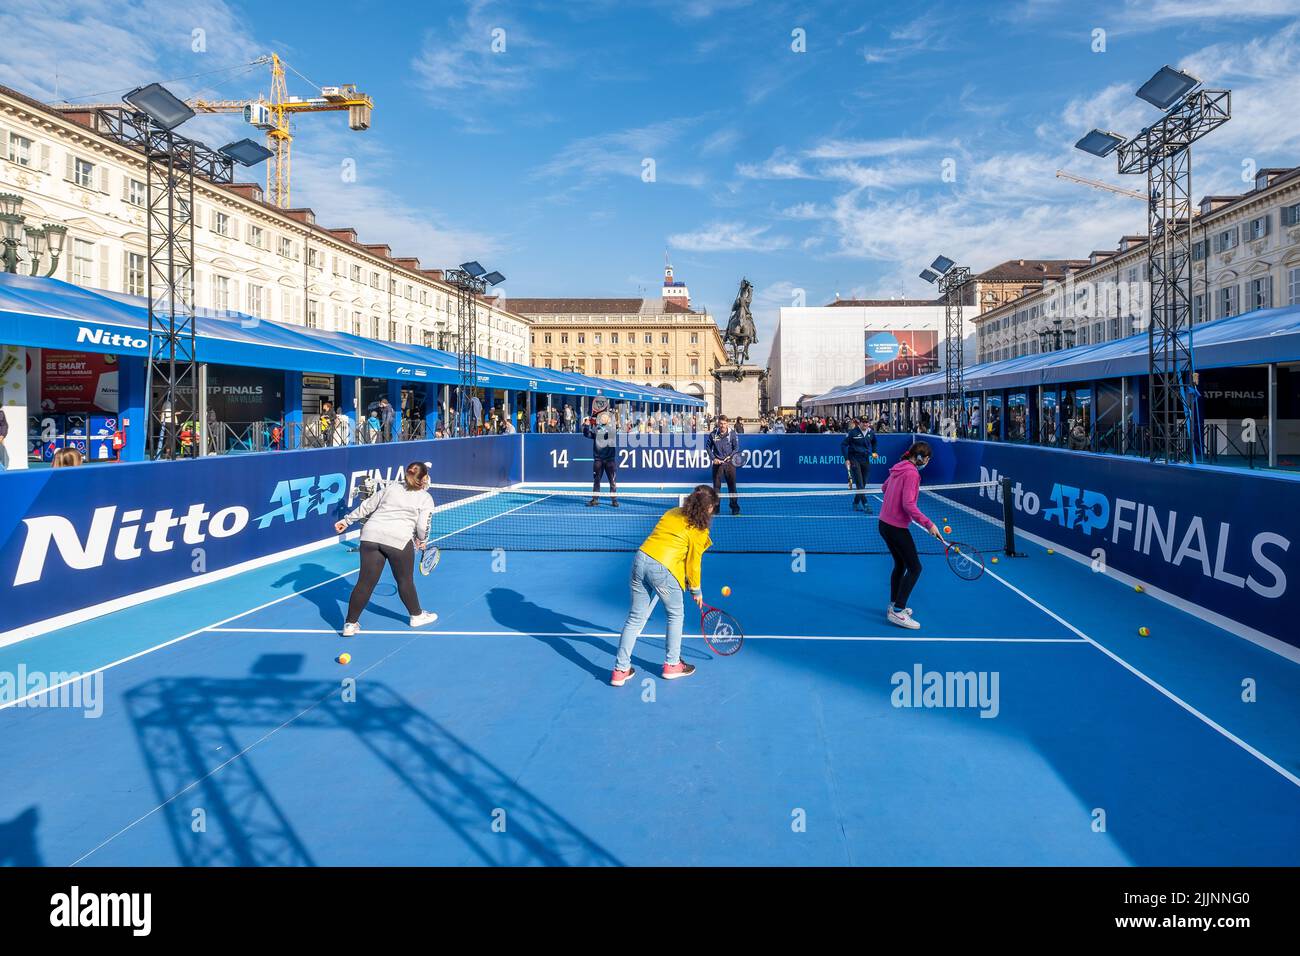 Los jugadores jugando al tenis durante las finales de Nitto ATP en Italia Foto de stock